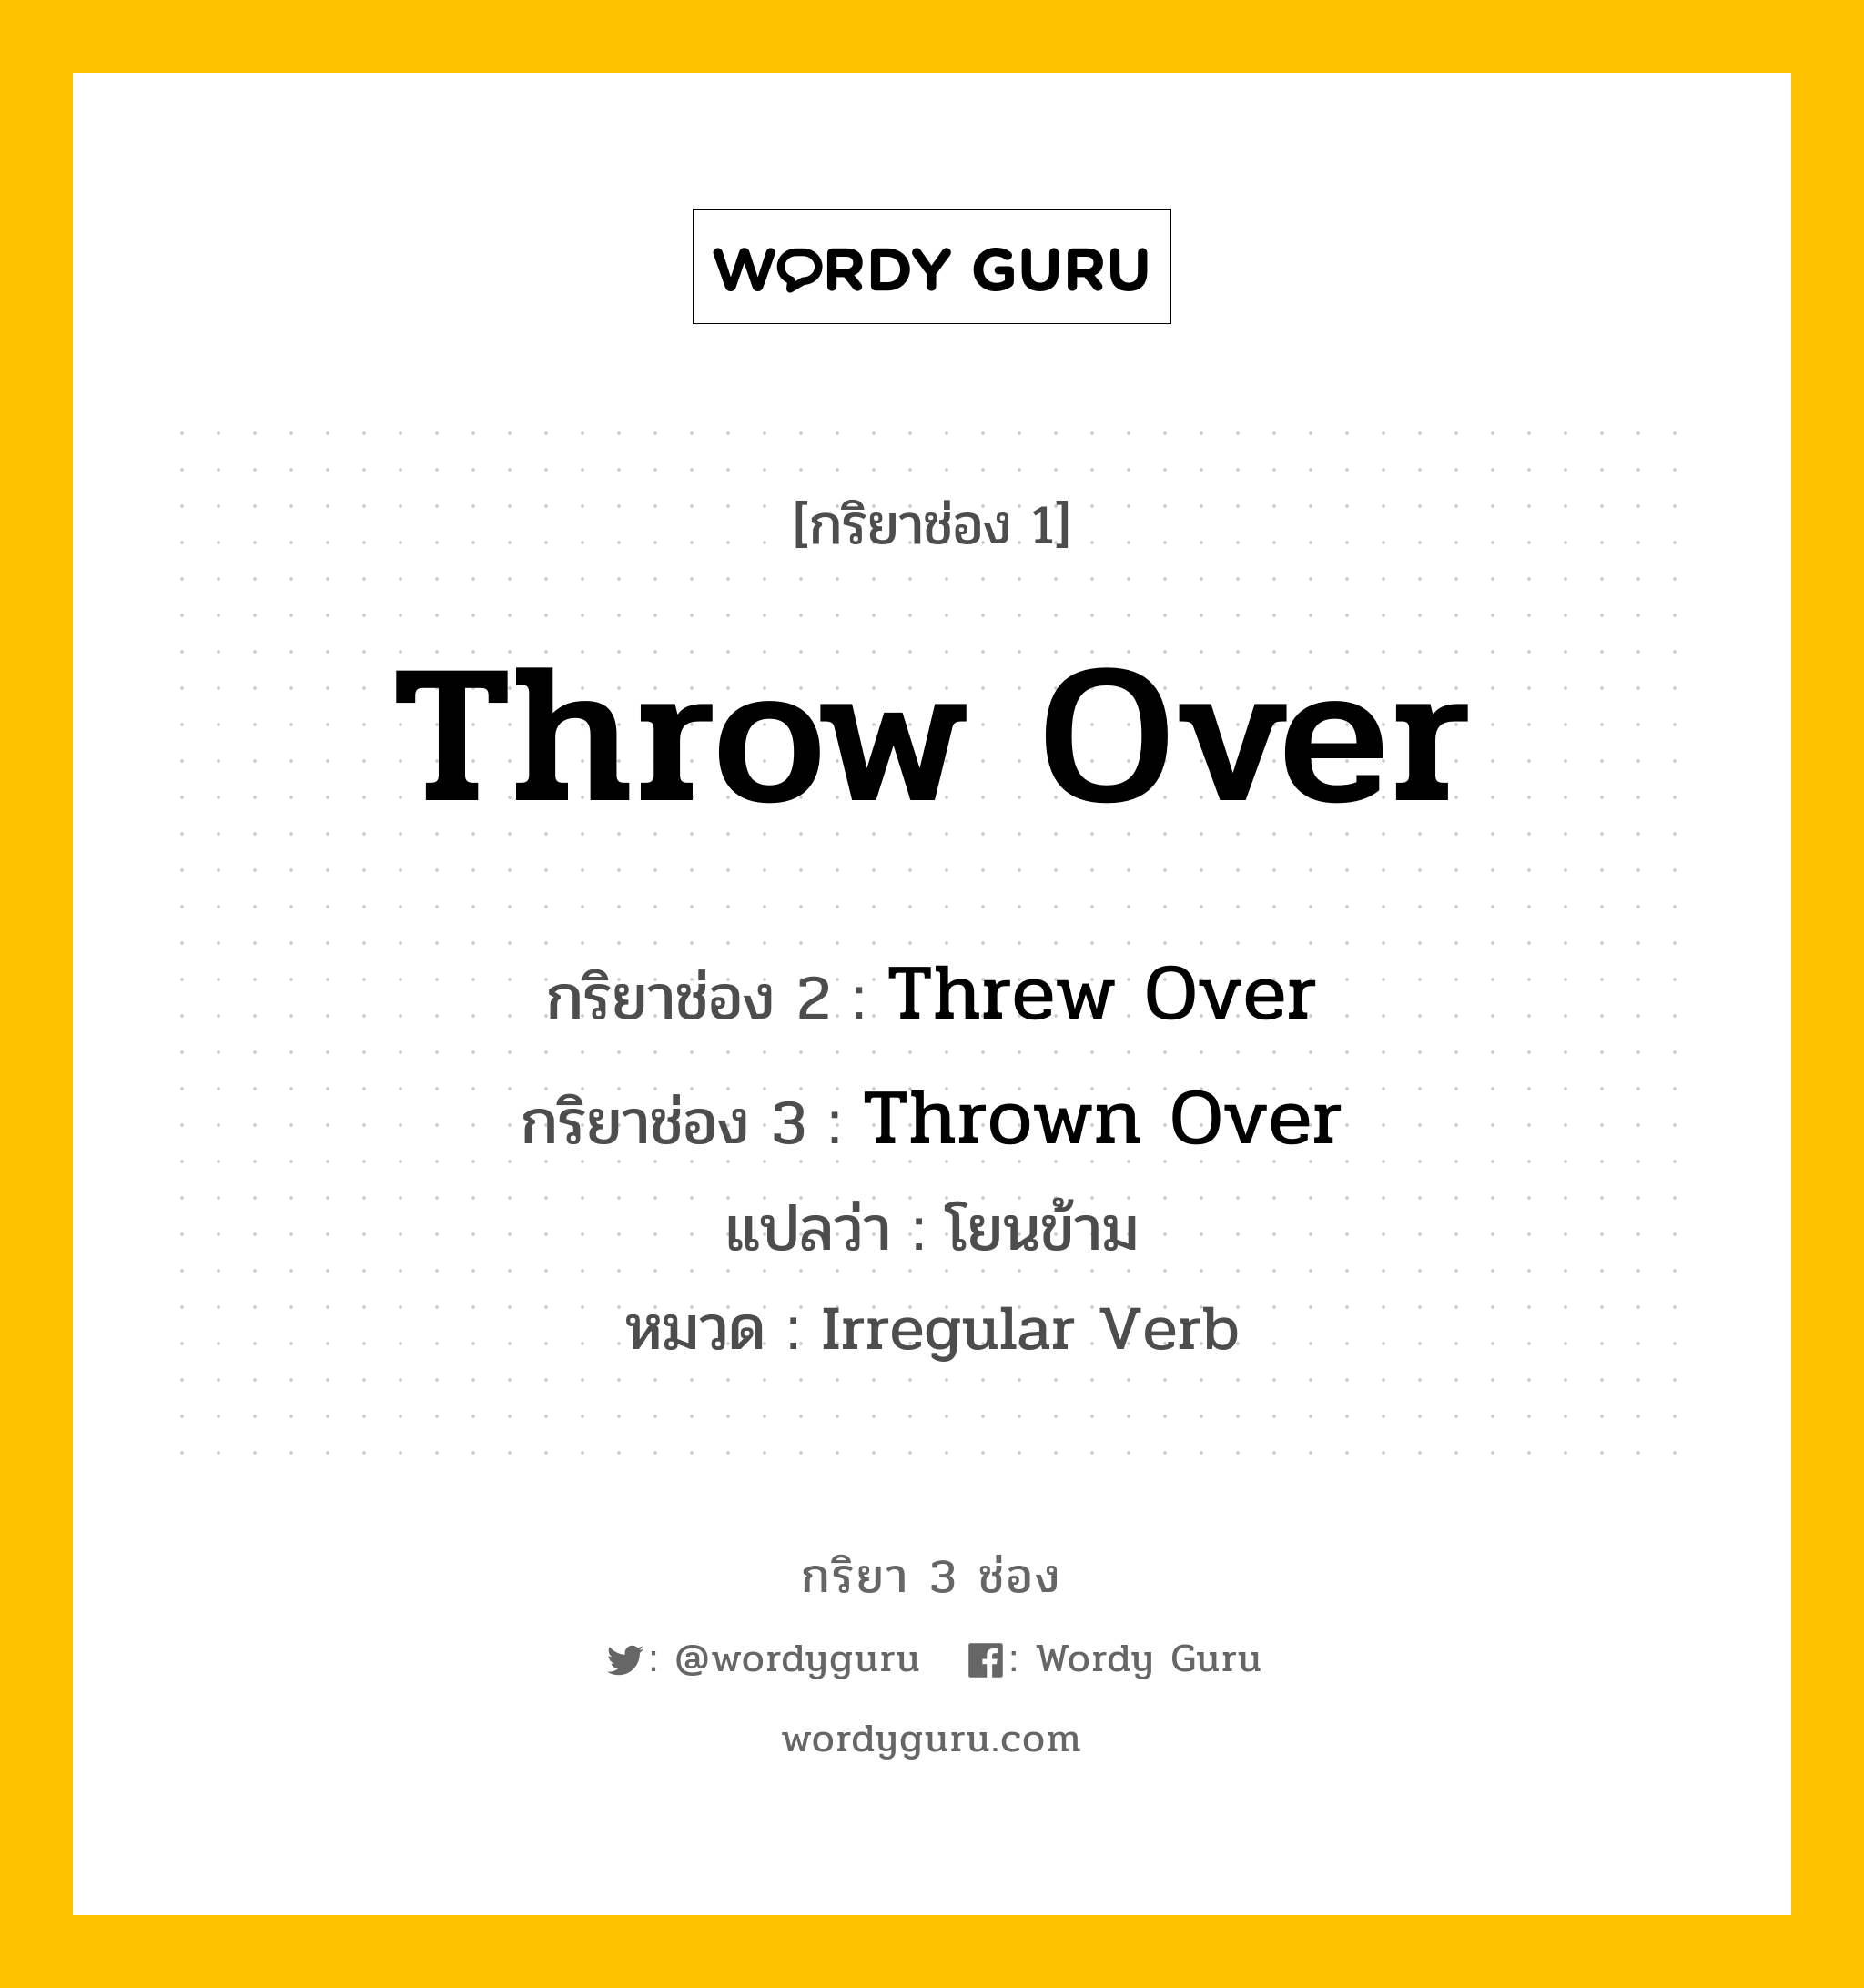 กริยา 3 ช่อง ของ Throw Over คืออะไร? มาดูคำอ่าน คำแปลกันเลย, กริยาช่อง 1 Throw Over กริยาช่อง 2 Threw Over กริยาช่อง 3 Thrown Over แปลว่า โยนข้าม หมวด Irregular Verb หมวด Irregular Verb